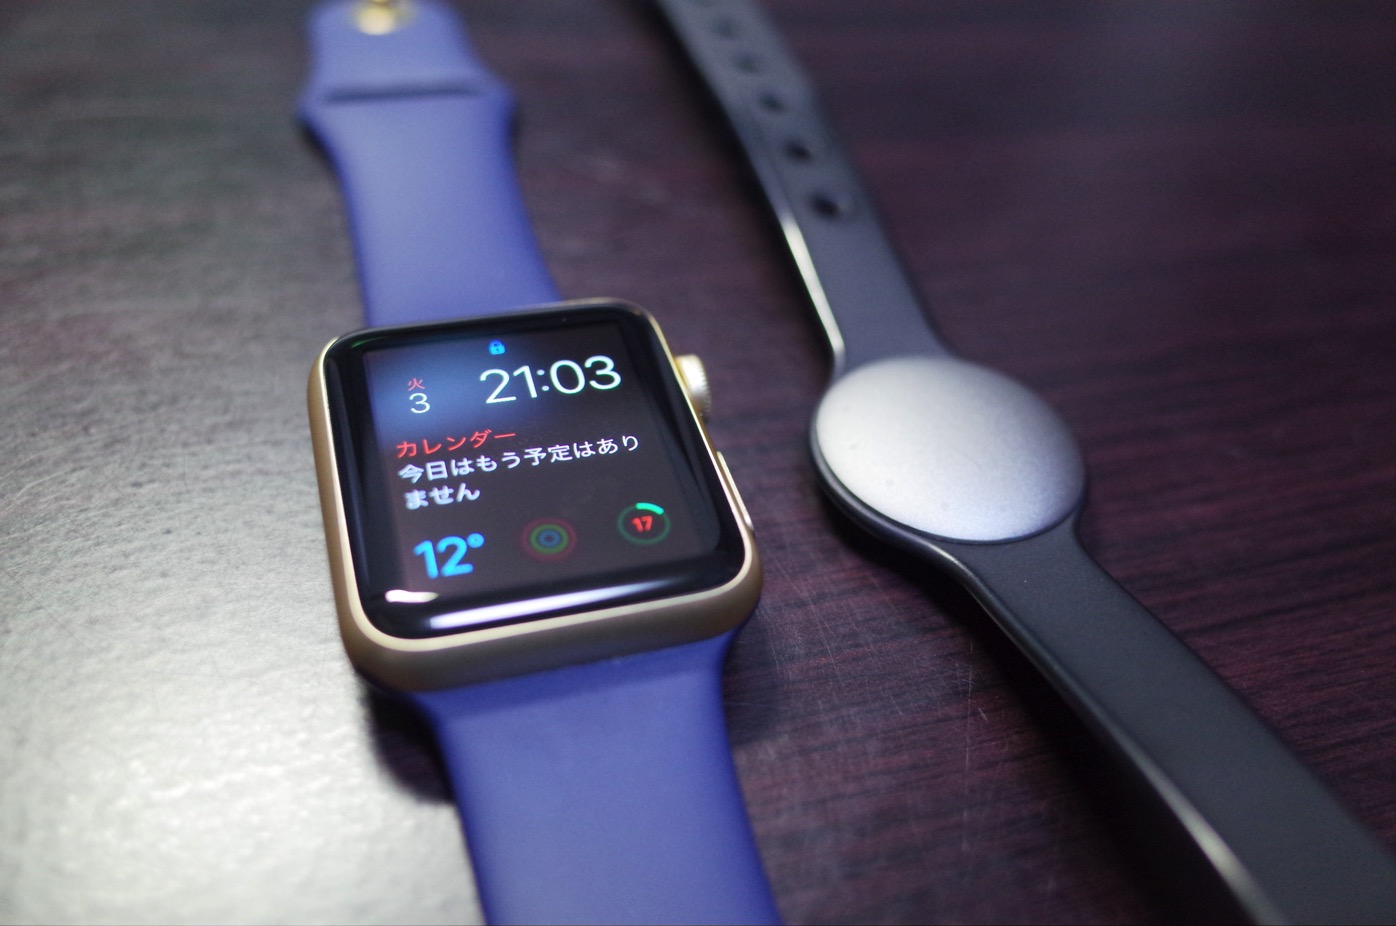 [Apple]「Apple Watch」があるのに「Misfit Shine アクティビティモニター」を装着し続ける理由